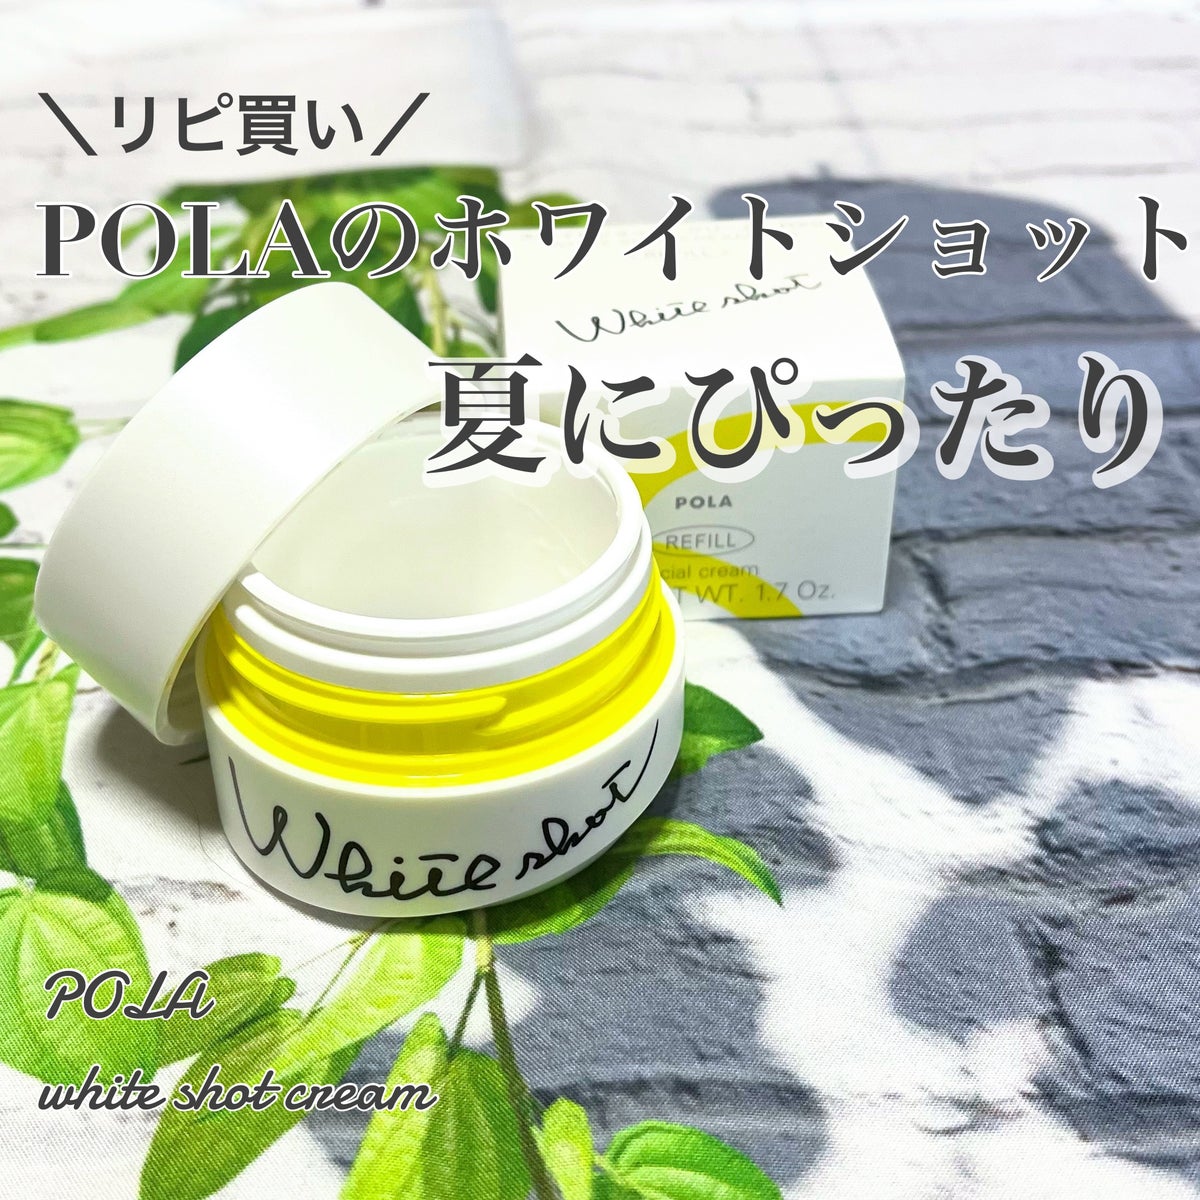 【新品】POLA ホワイトショット クリーム RXS サンプル 0.6g×30包